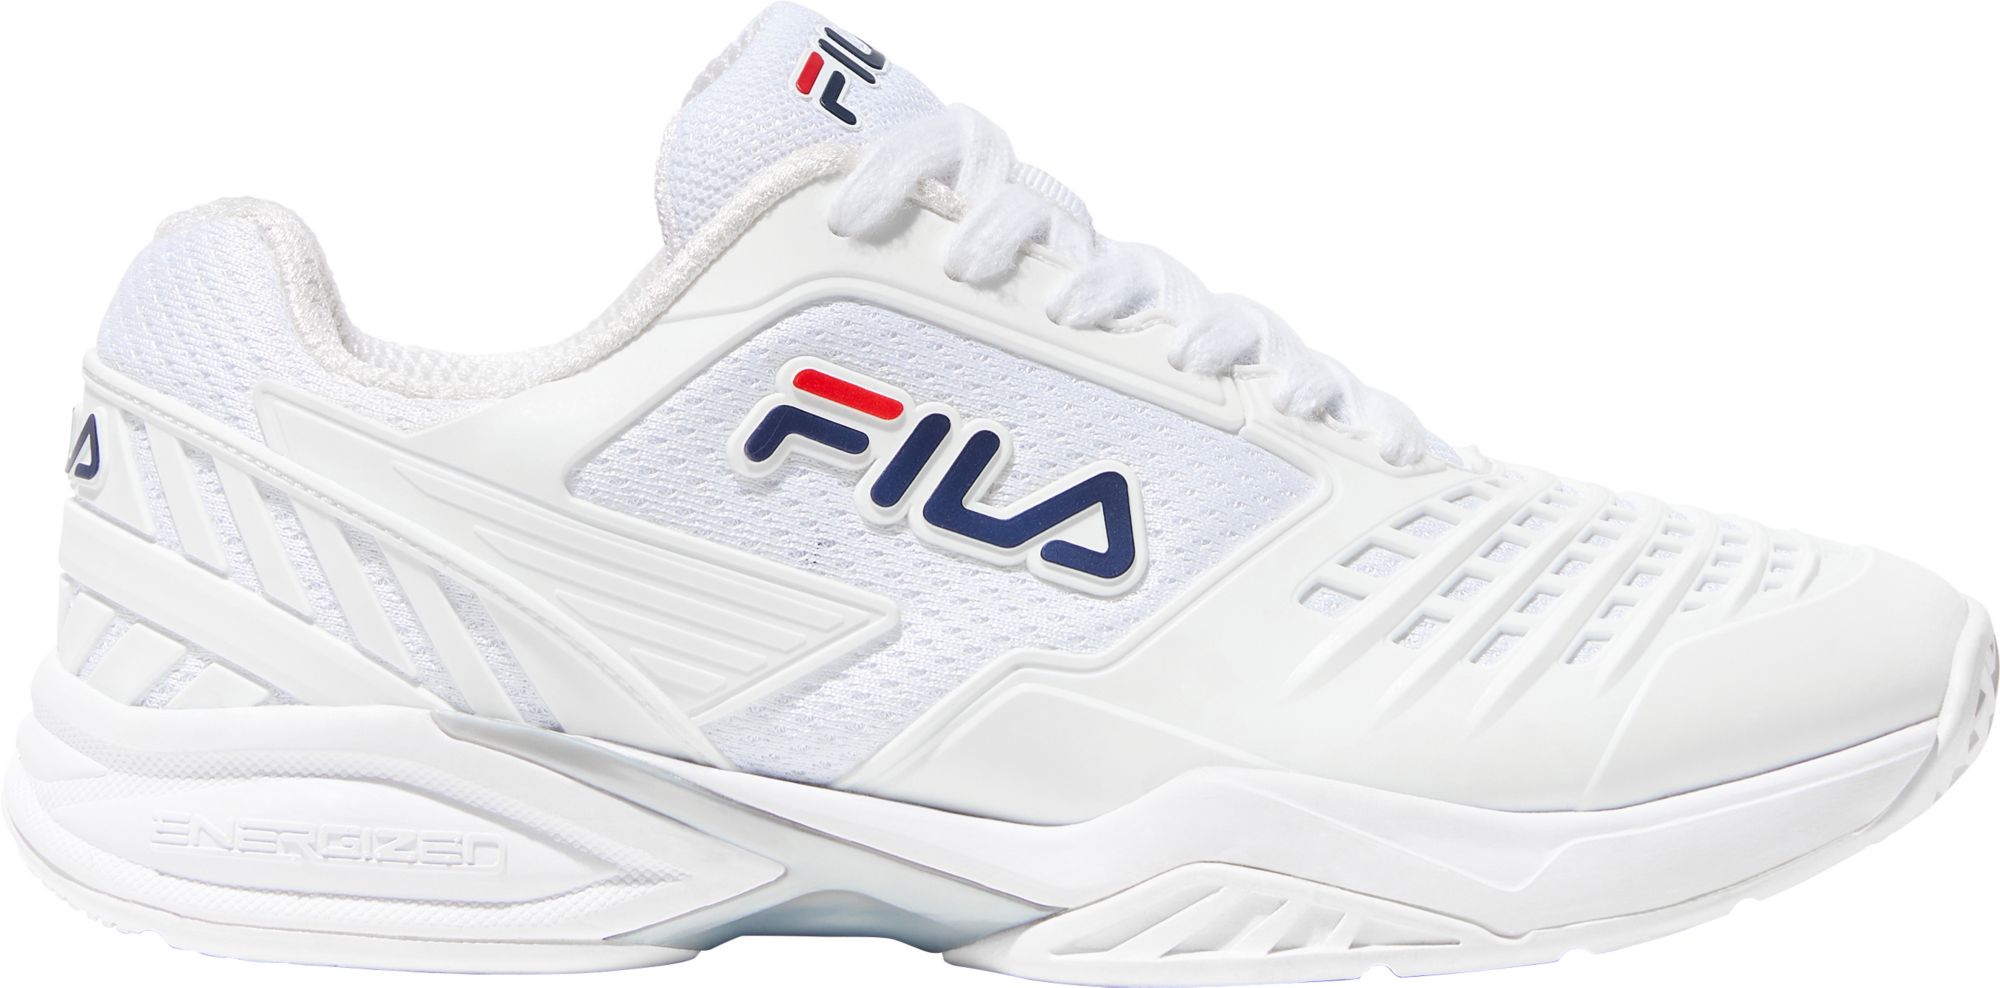 fila axilus energized women's tennis shoe